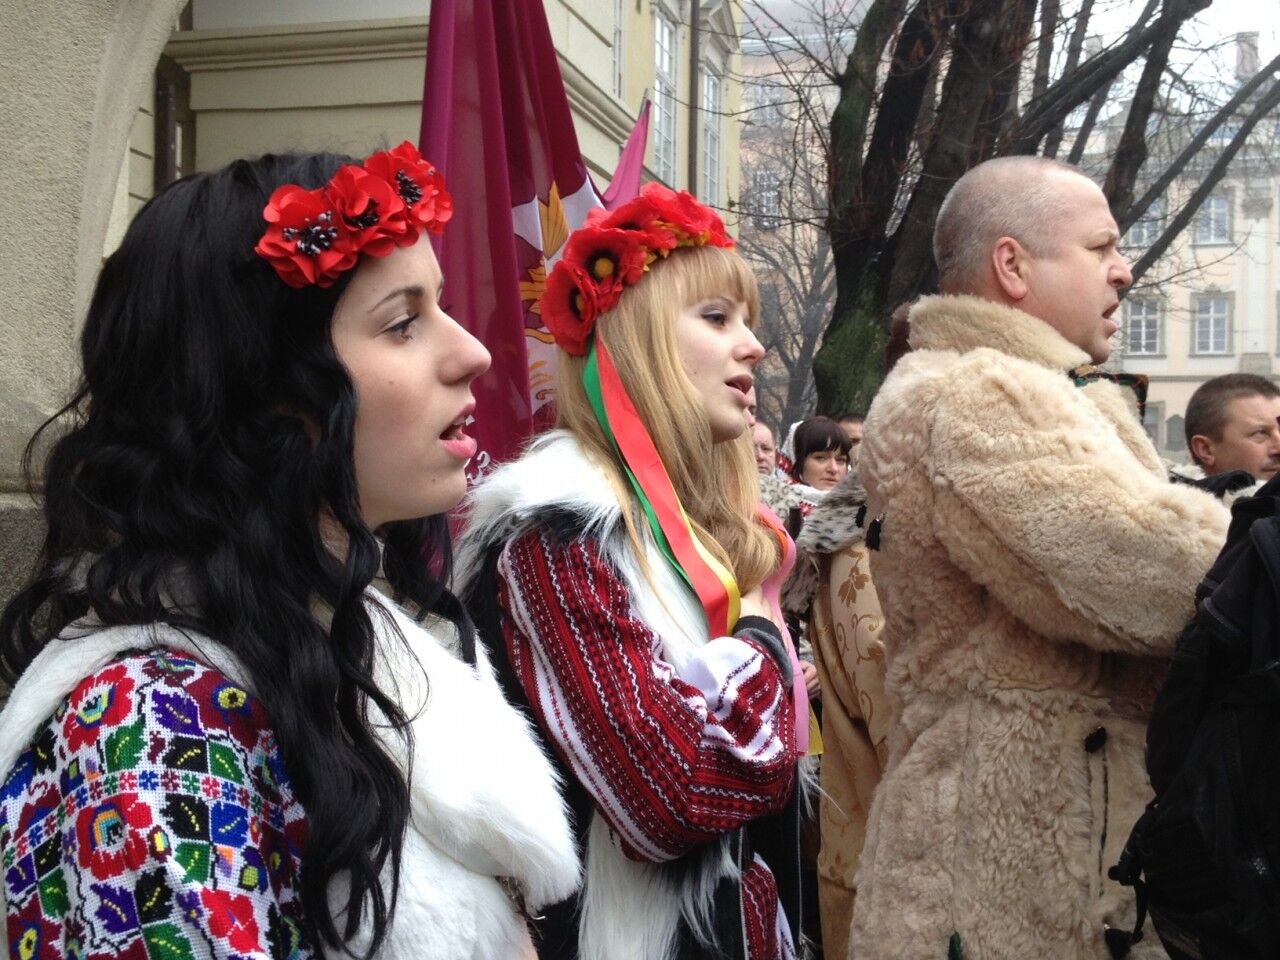 Во Львове массово спели гимн Украины